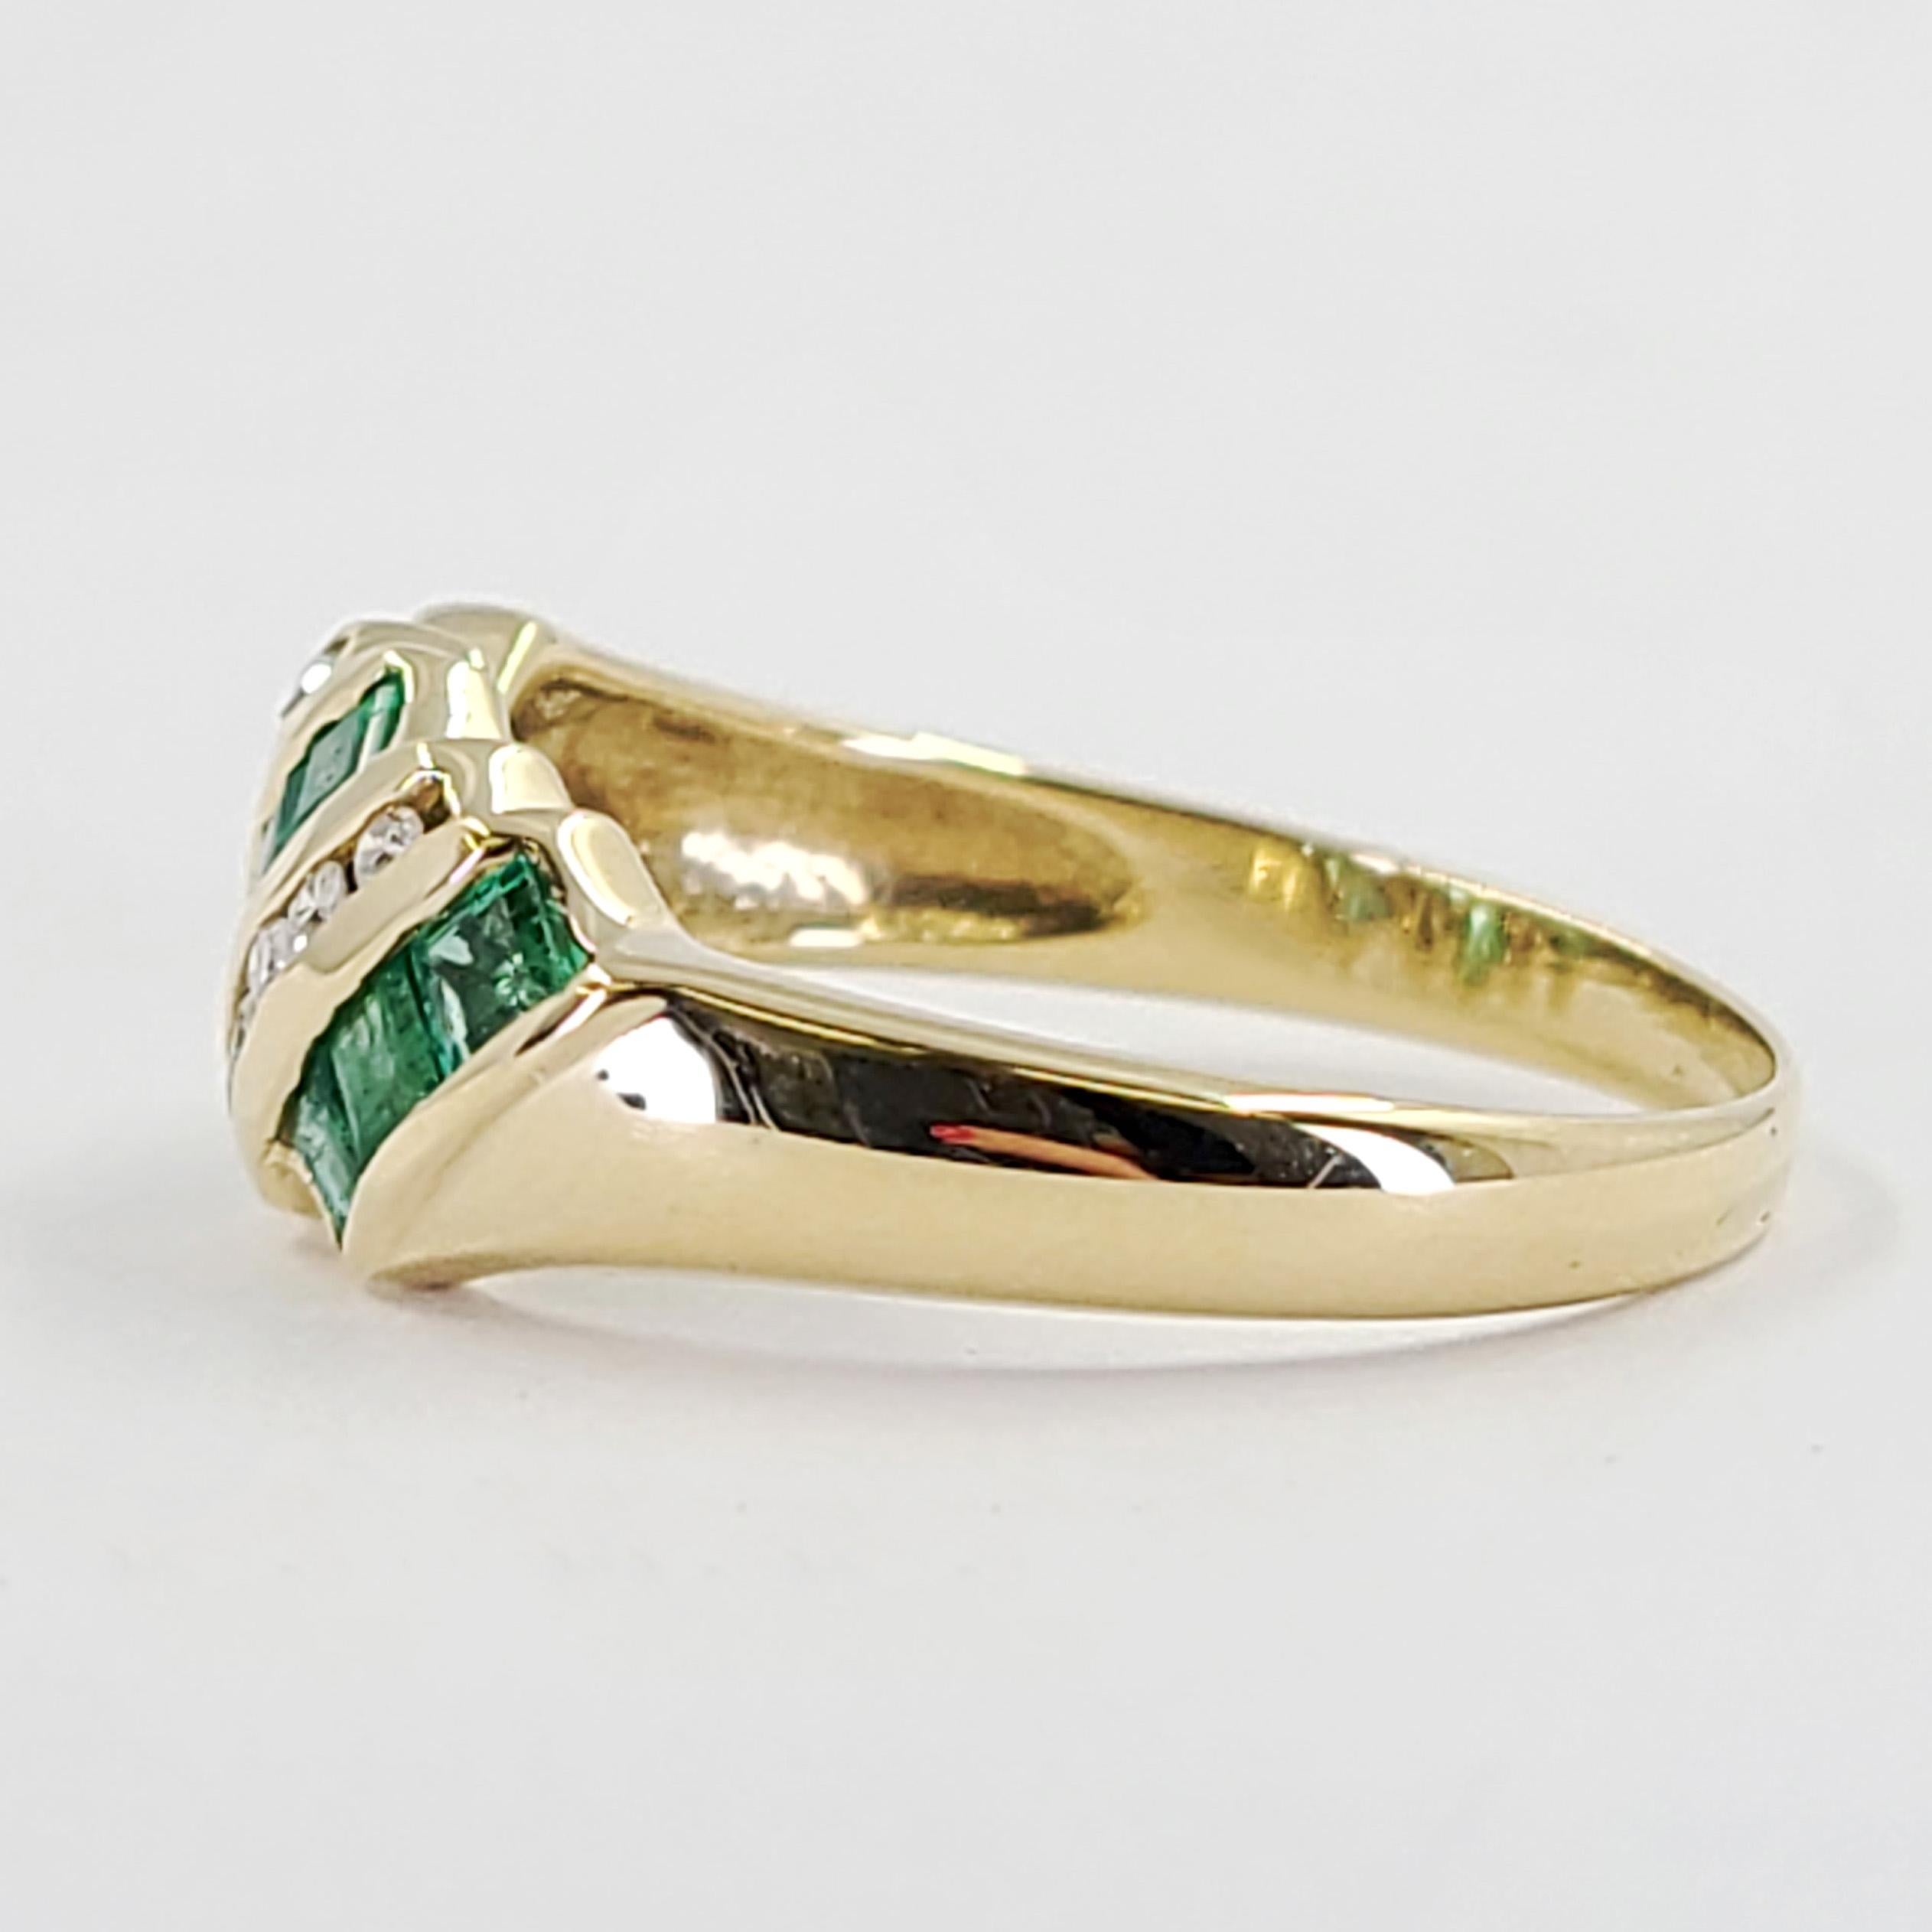 14 Karat Gelbgold geschwungener Ring mit 10 quadratisch geschnittenen Smaragden von insgesamt ca. 1,00 Karat und 10 runden Diamanten der Reinheit SI und Farbe H von insgesamt 0,10 Karat in Kanaleinstellungen. Fingergröße 7; Der Kauf beinhaltet einen